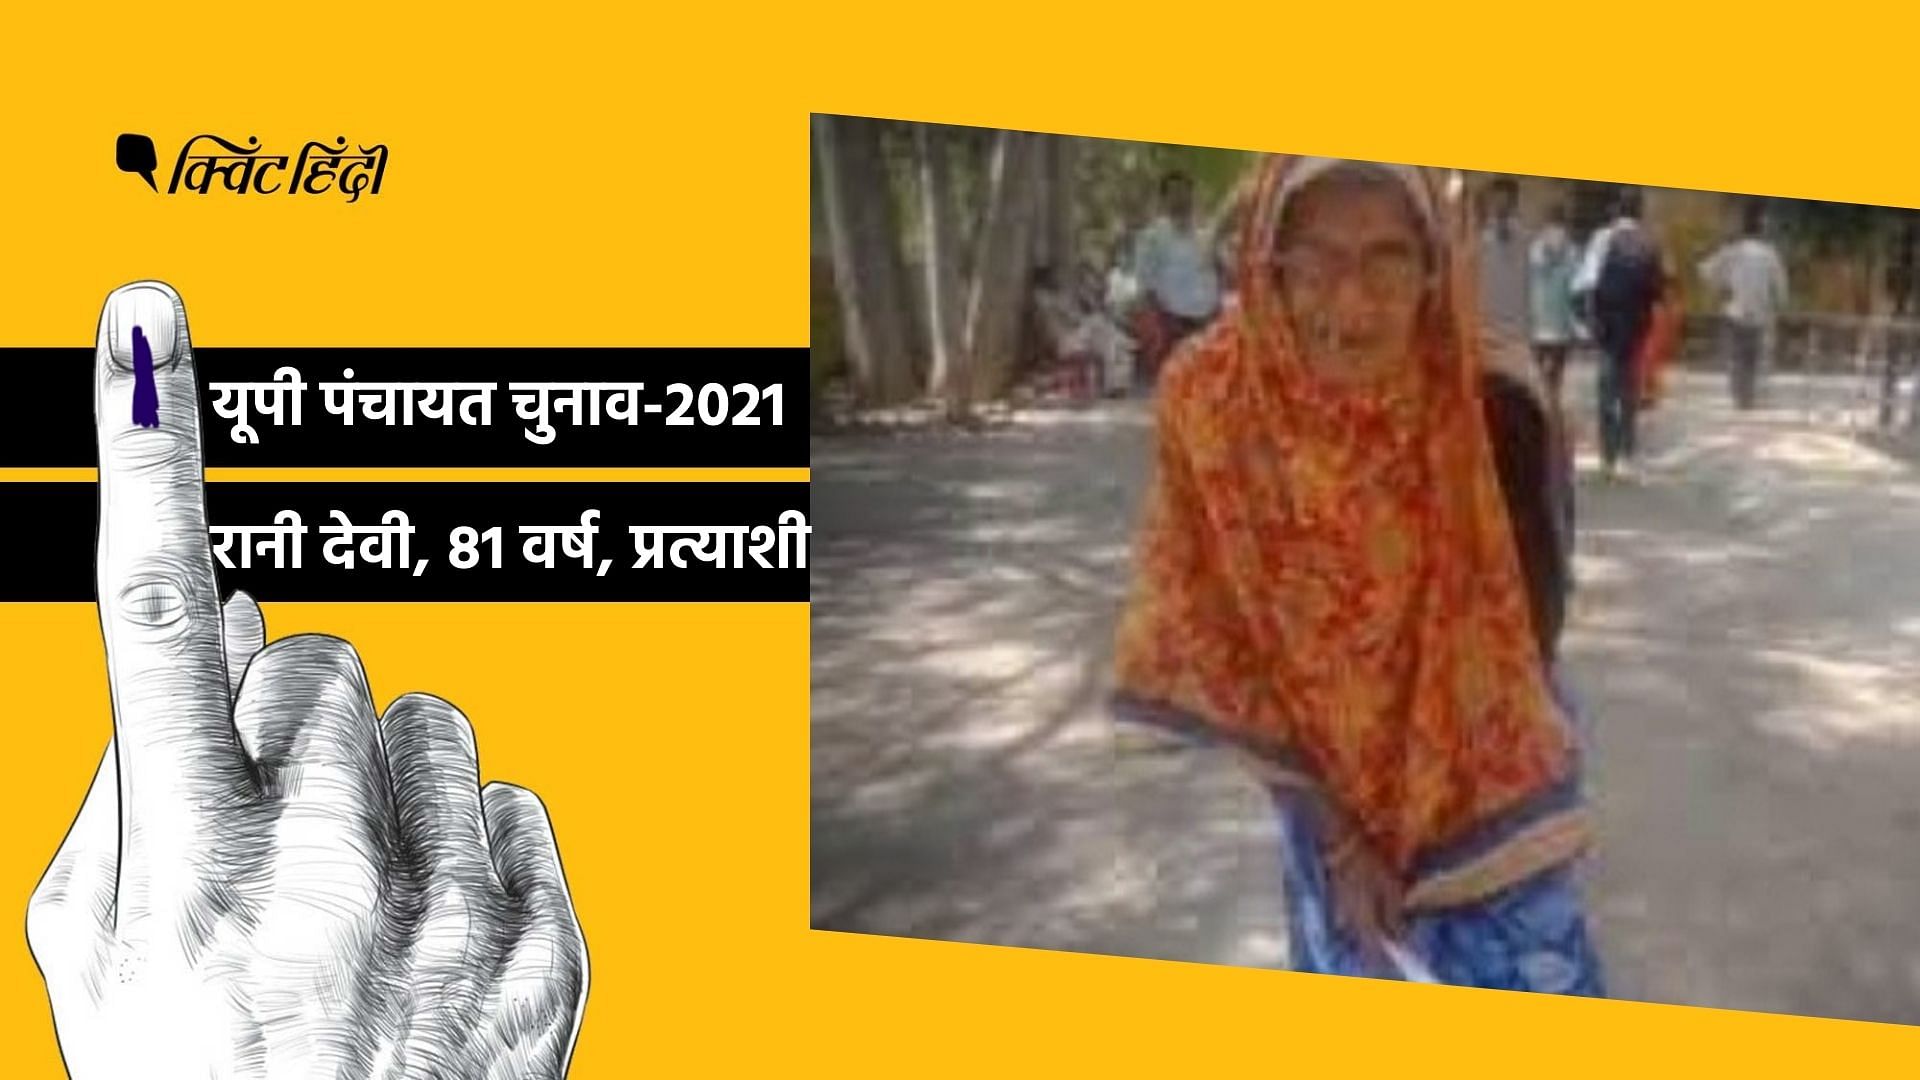 UP Panchayat Election 2021: गांव के विकास का सपने लिए 81 साल की रानी मैदान में